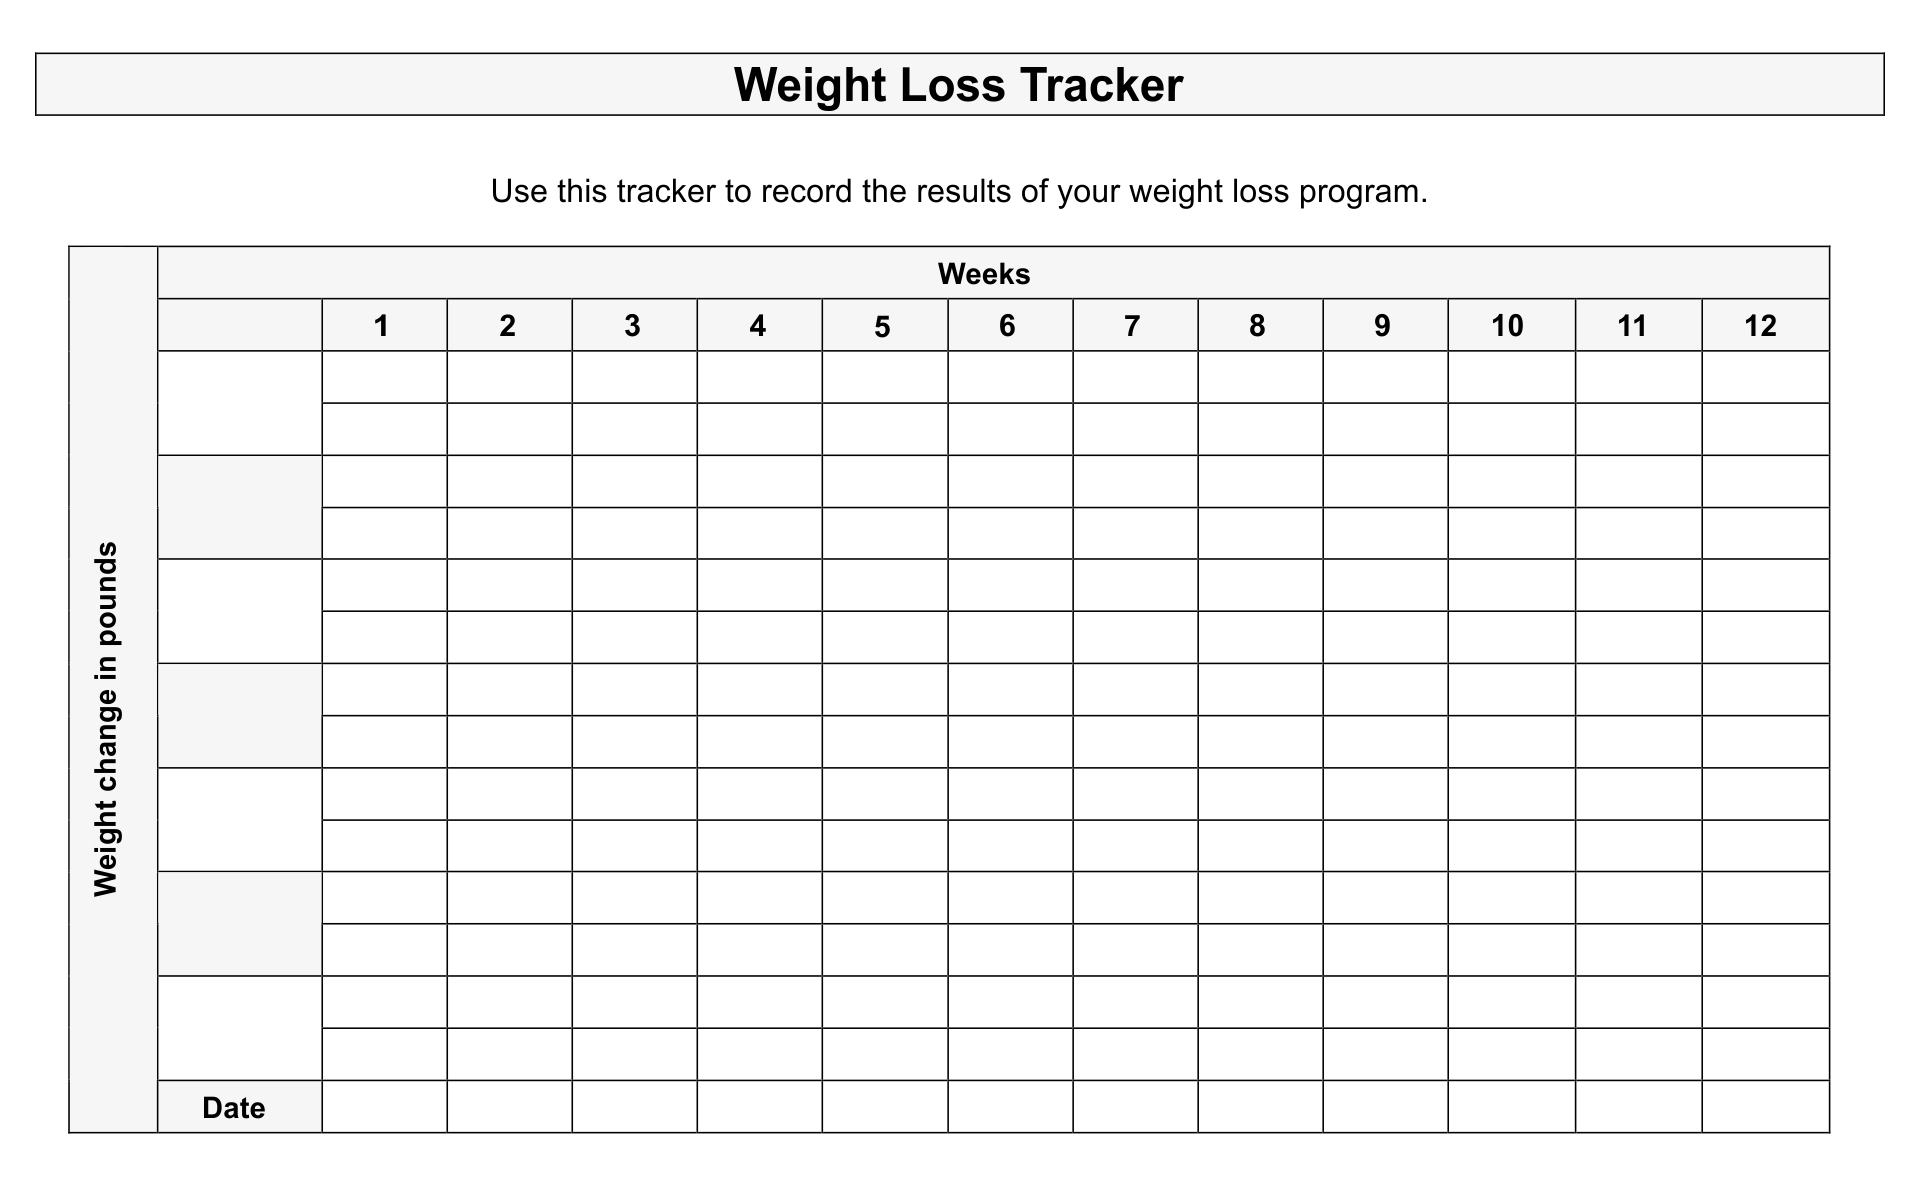 12 week weight loss tracker template